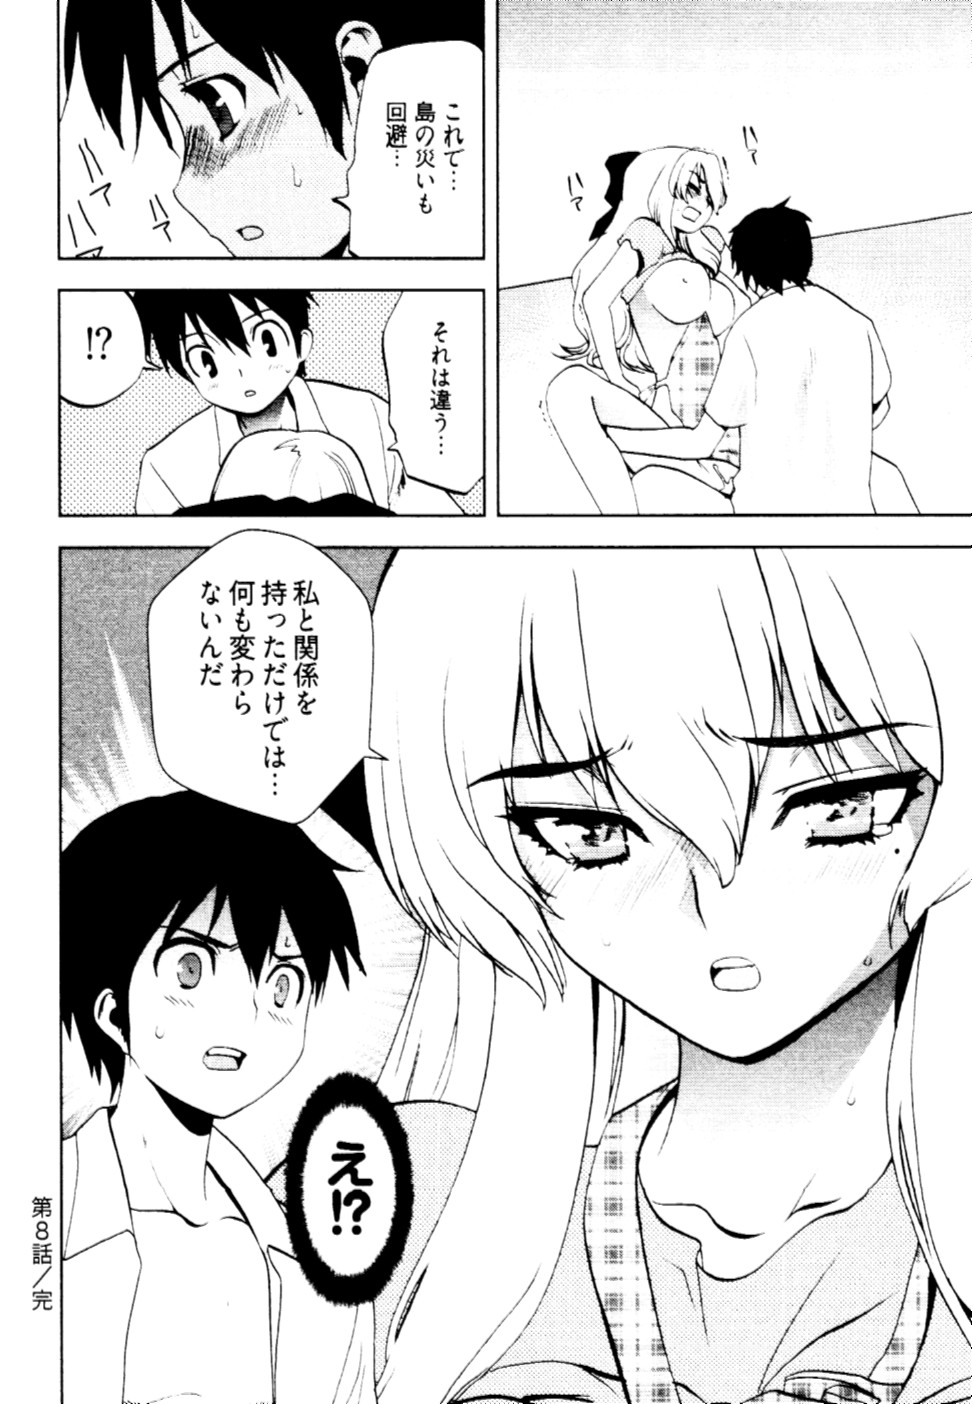 [Togami Shin] Tonosama no Nanahon yari Vol.2 page 29 full